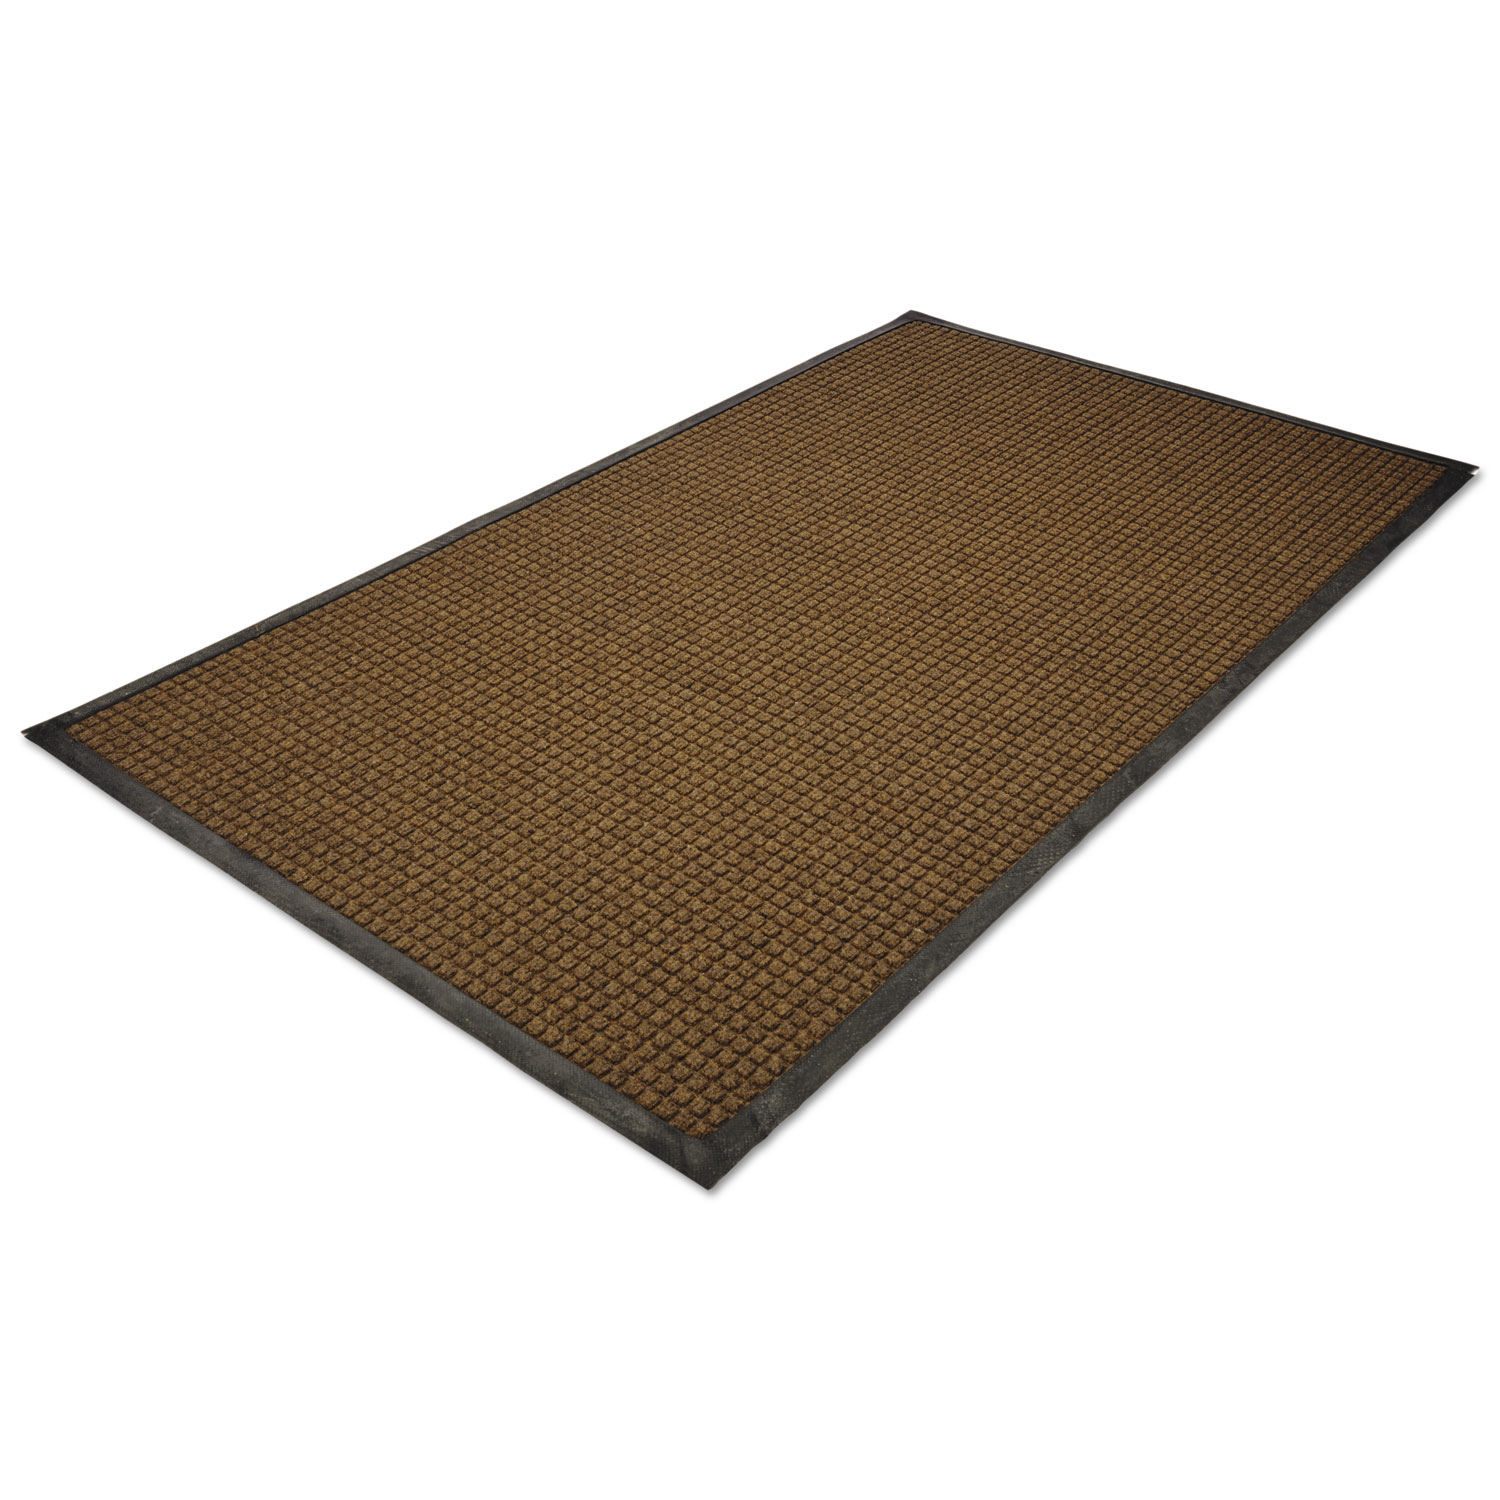  Guardian WG030514 WaterGuard Indoor/Outdoor Scraper Mat, 36 x 60, Brown (MLLWG030514) 